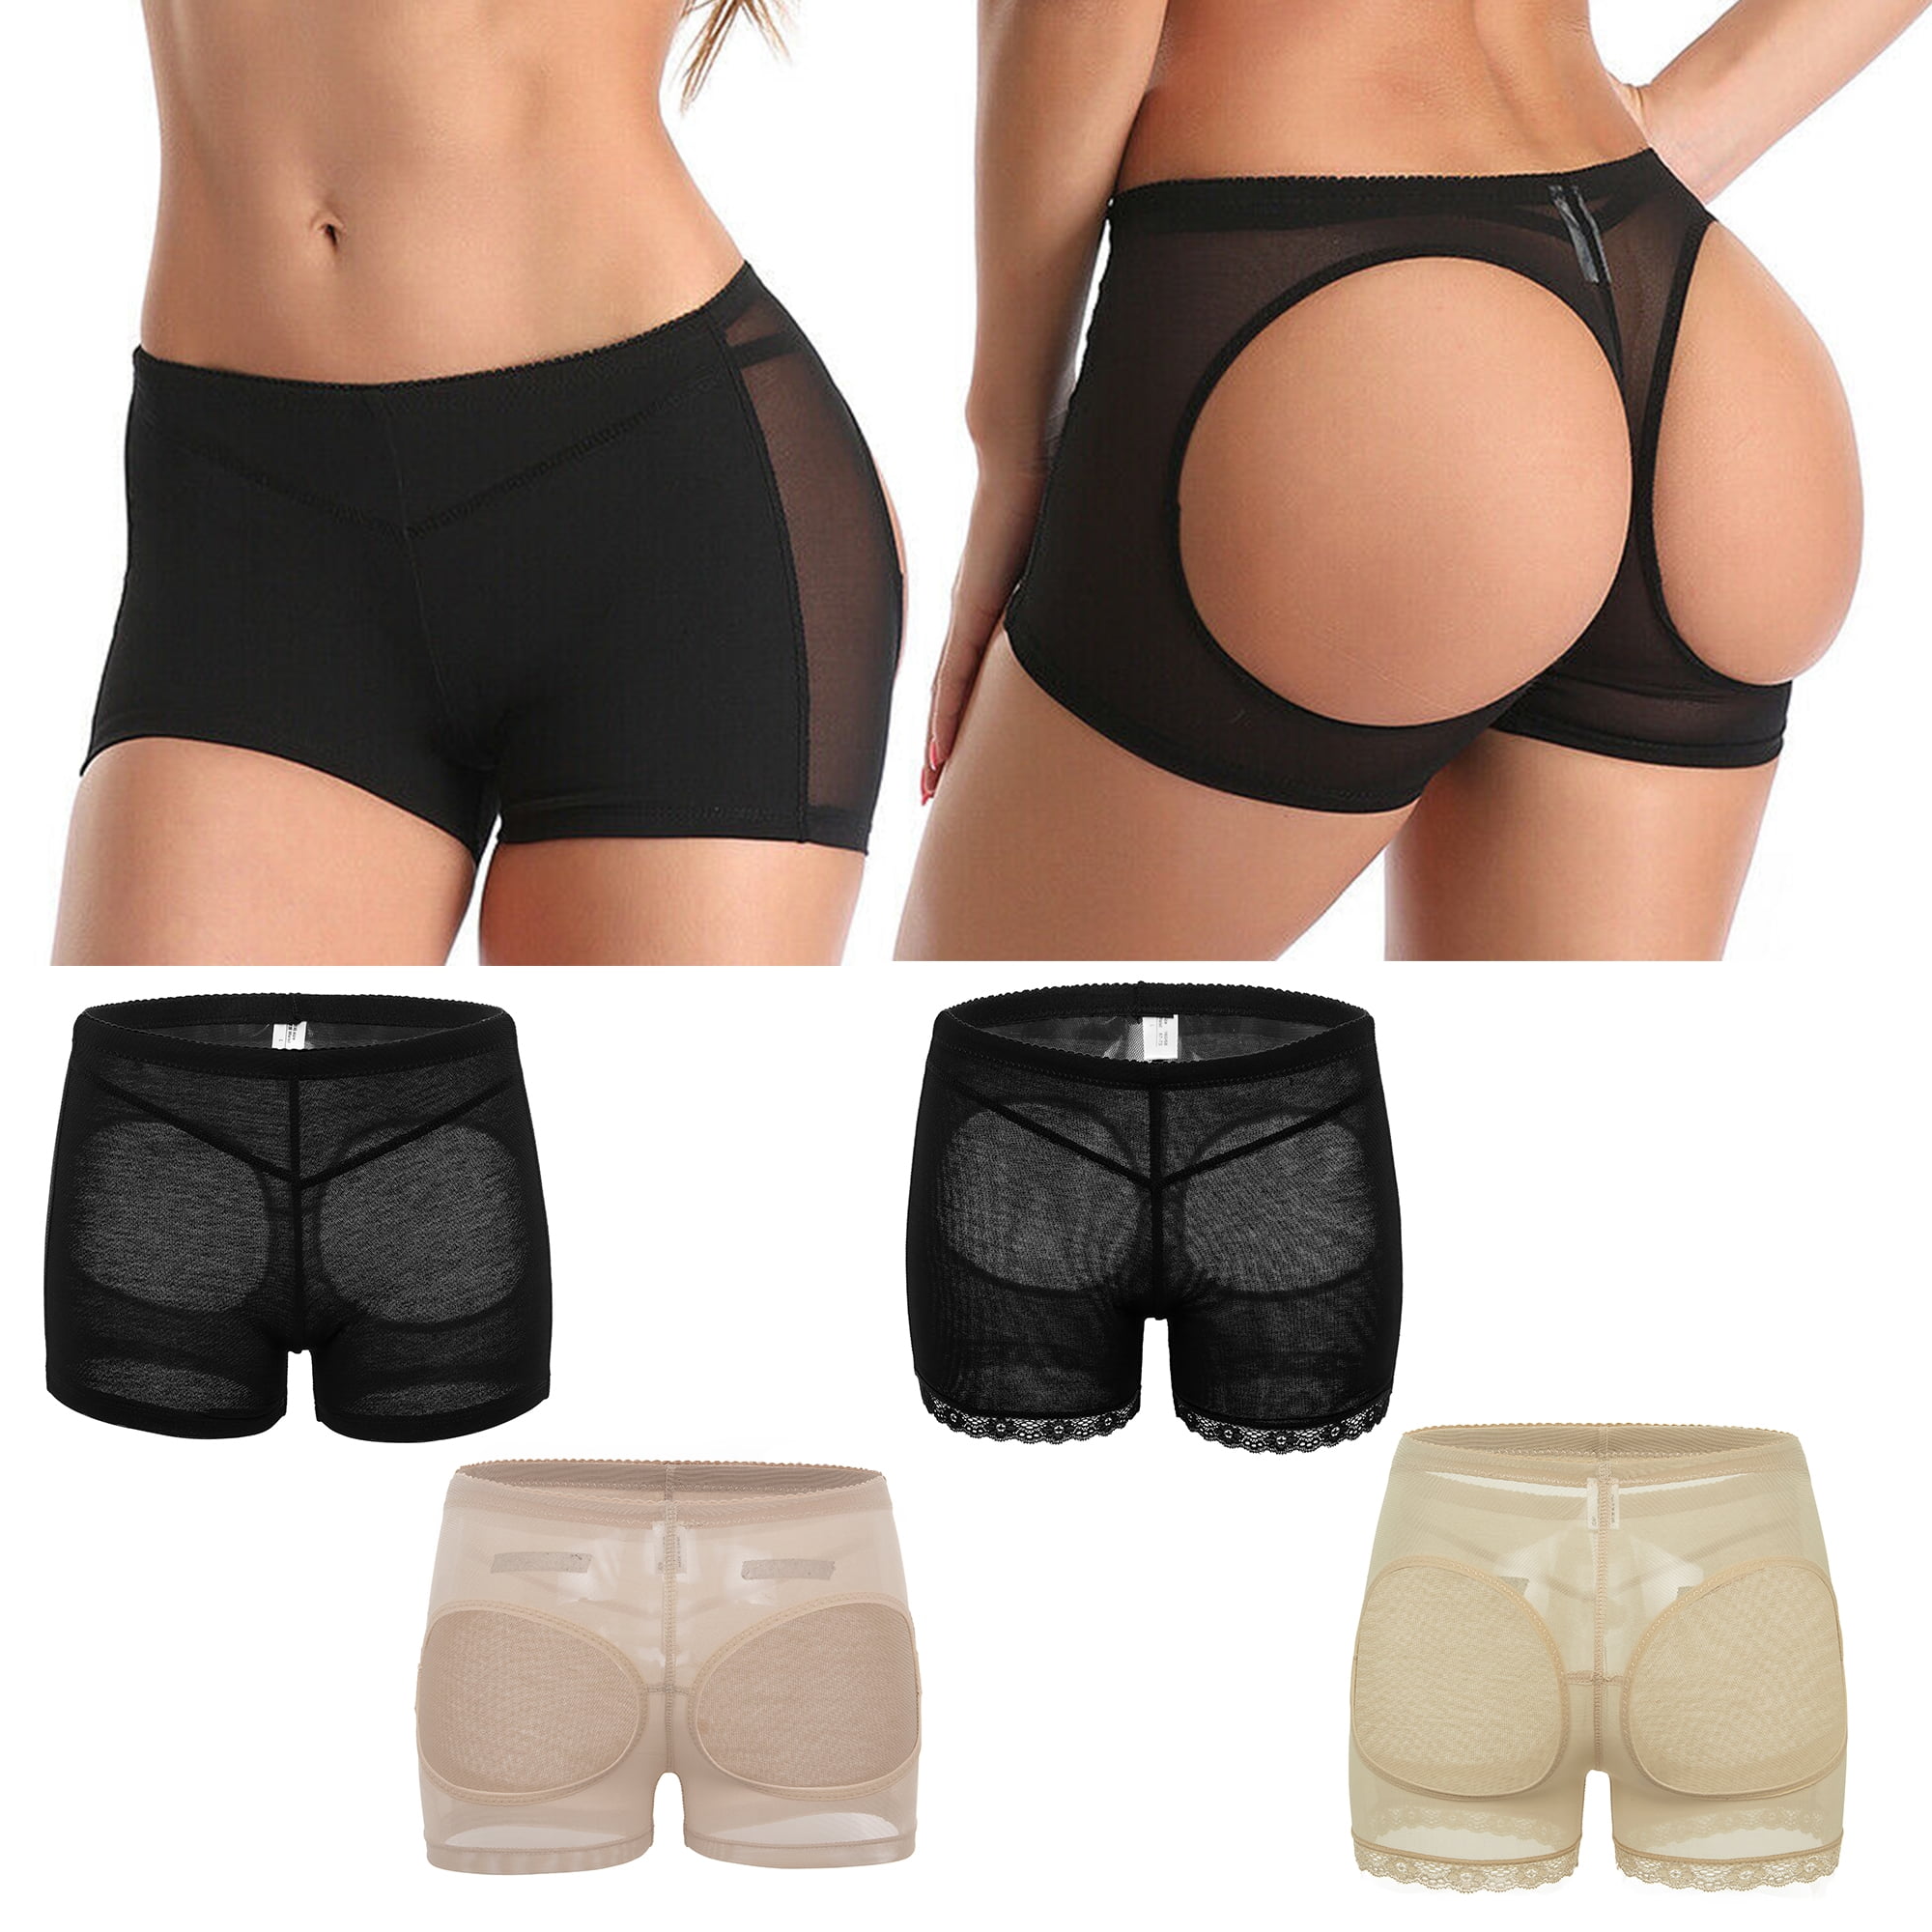 Elastic Women High Waist Butt Lift Body Shaper Panty Underwear Seamless  Butt Lift Panties, Black, M